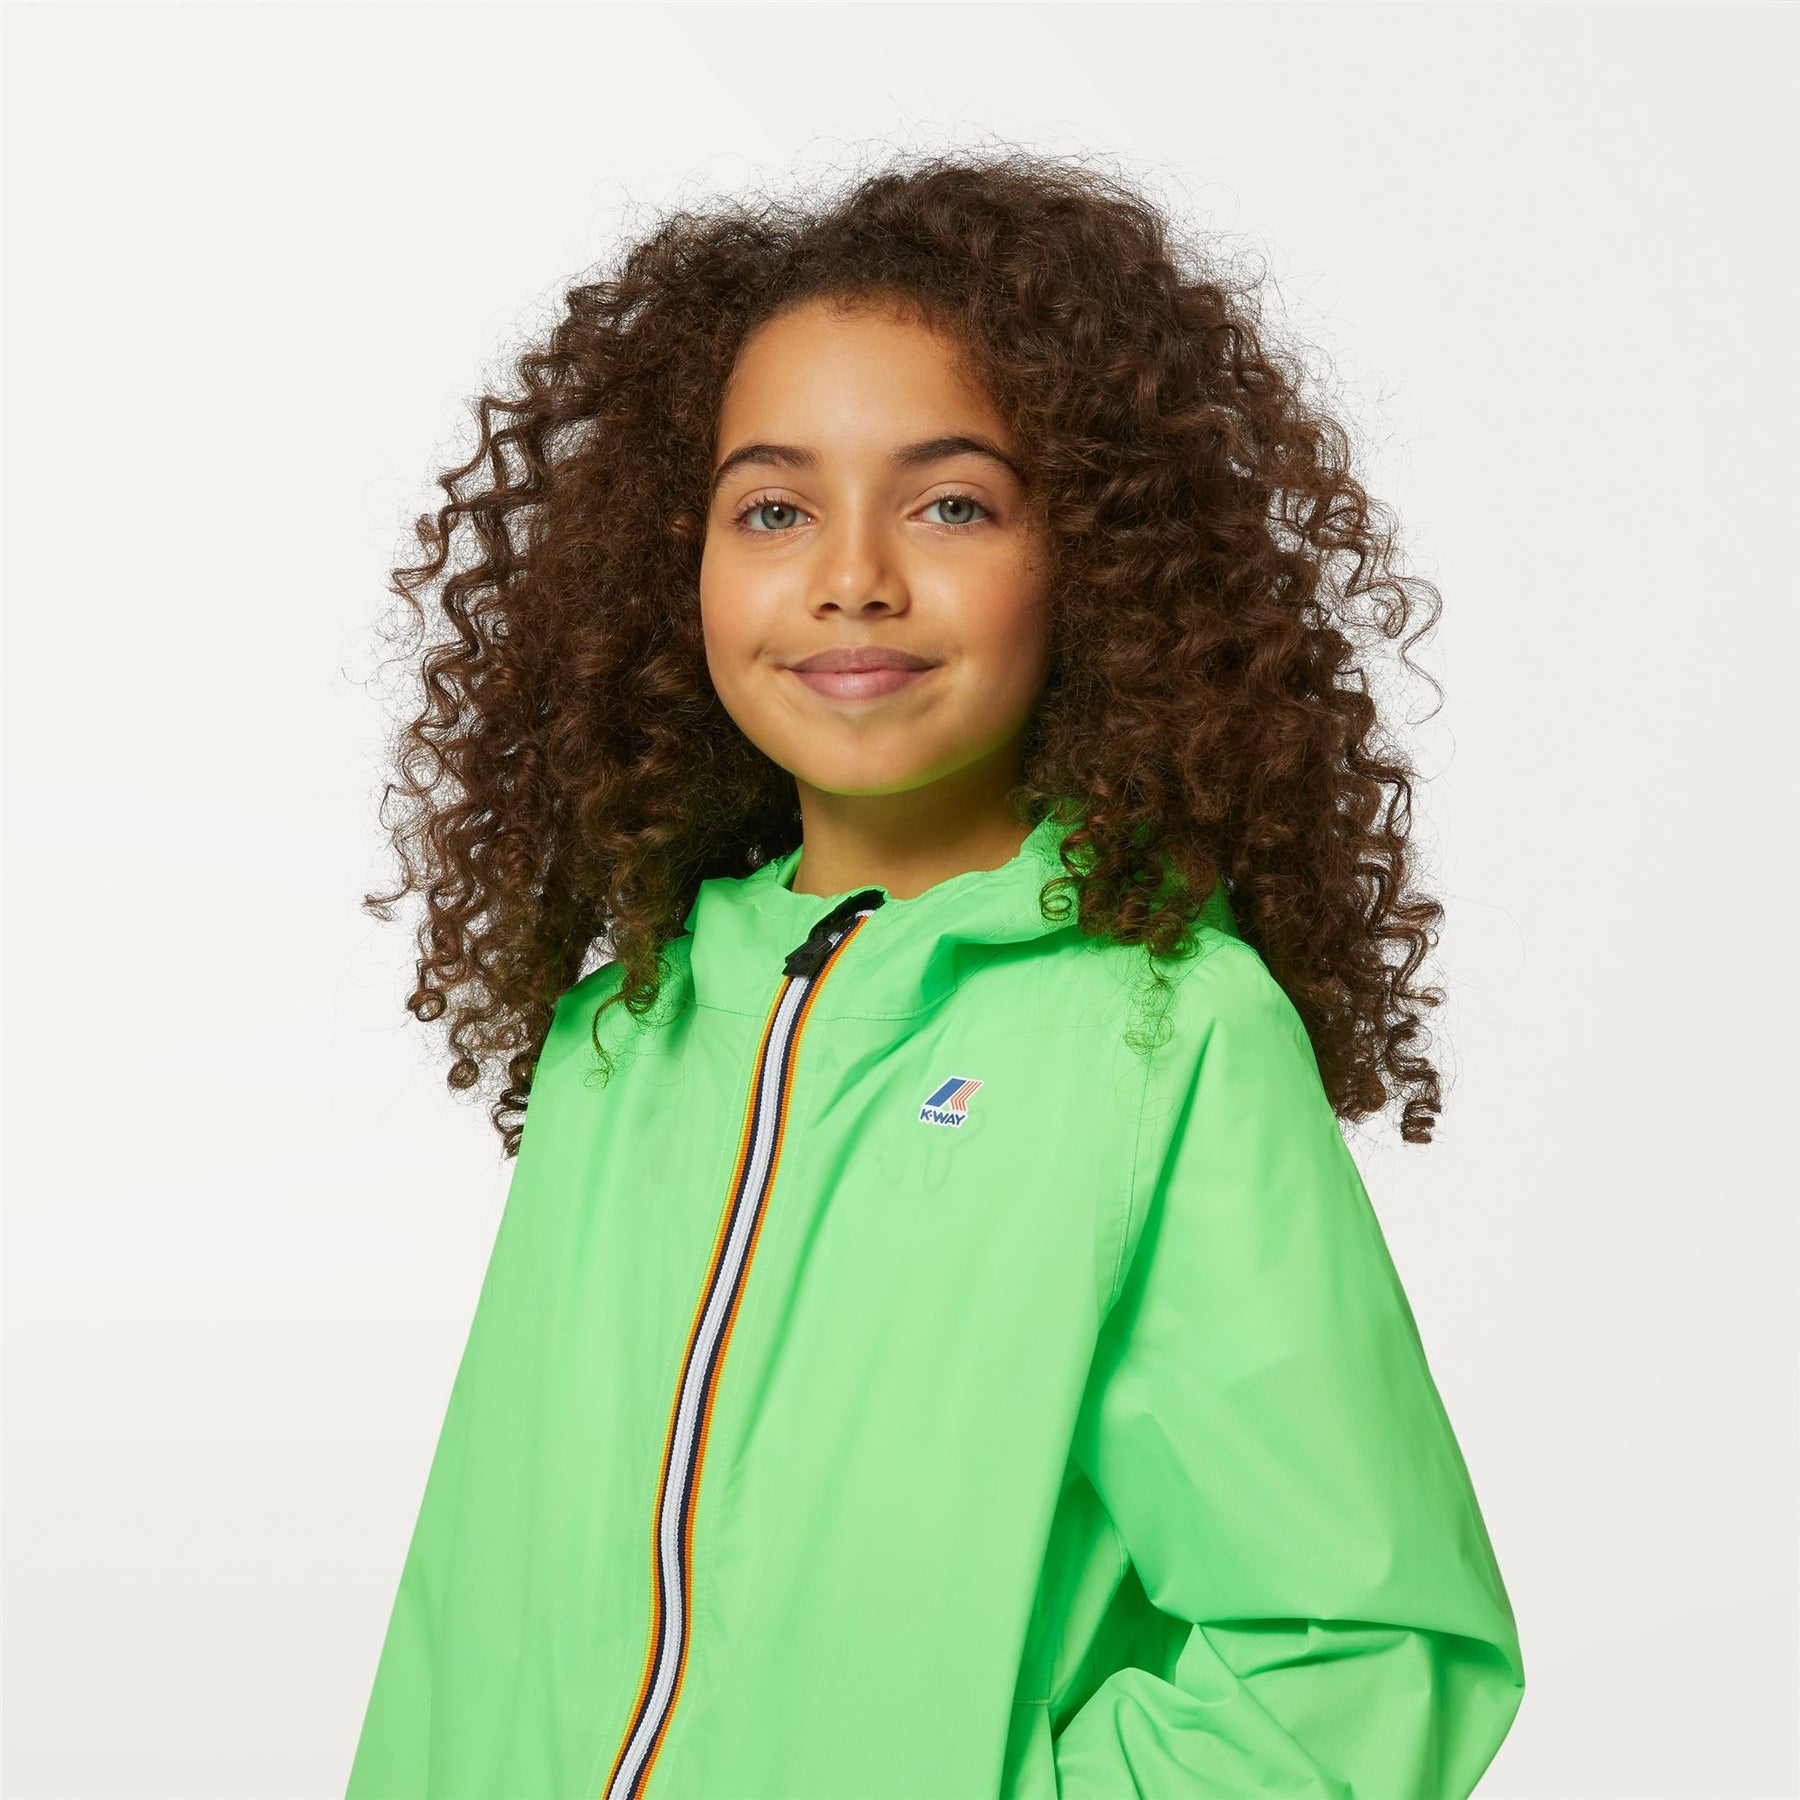 Claude - Kids Packable Full Zip Waterproof Rain Jacket in Green Fluo